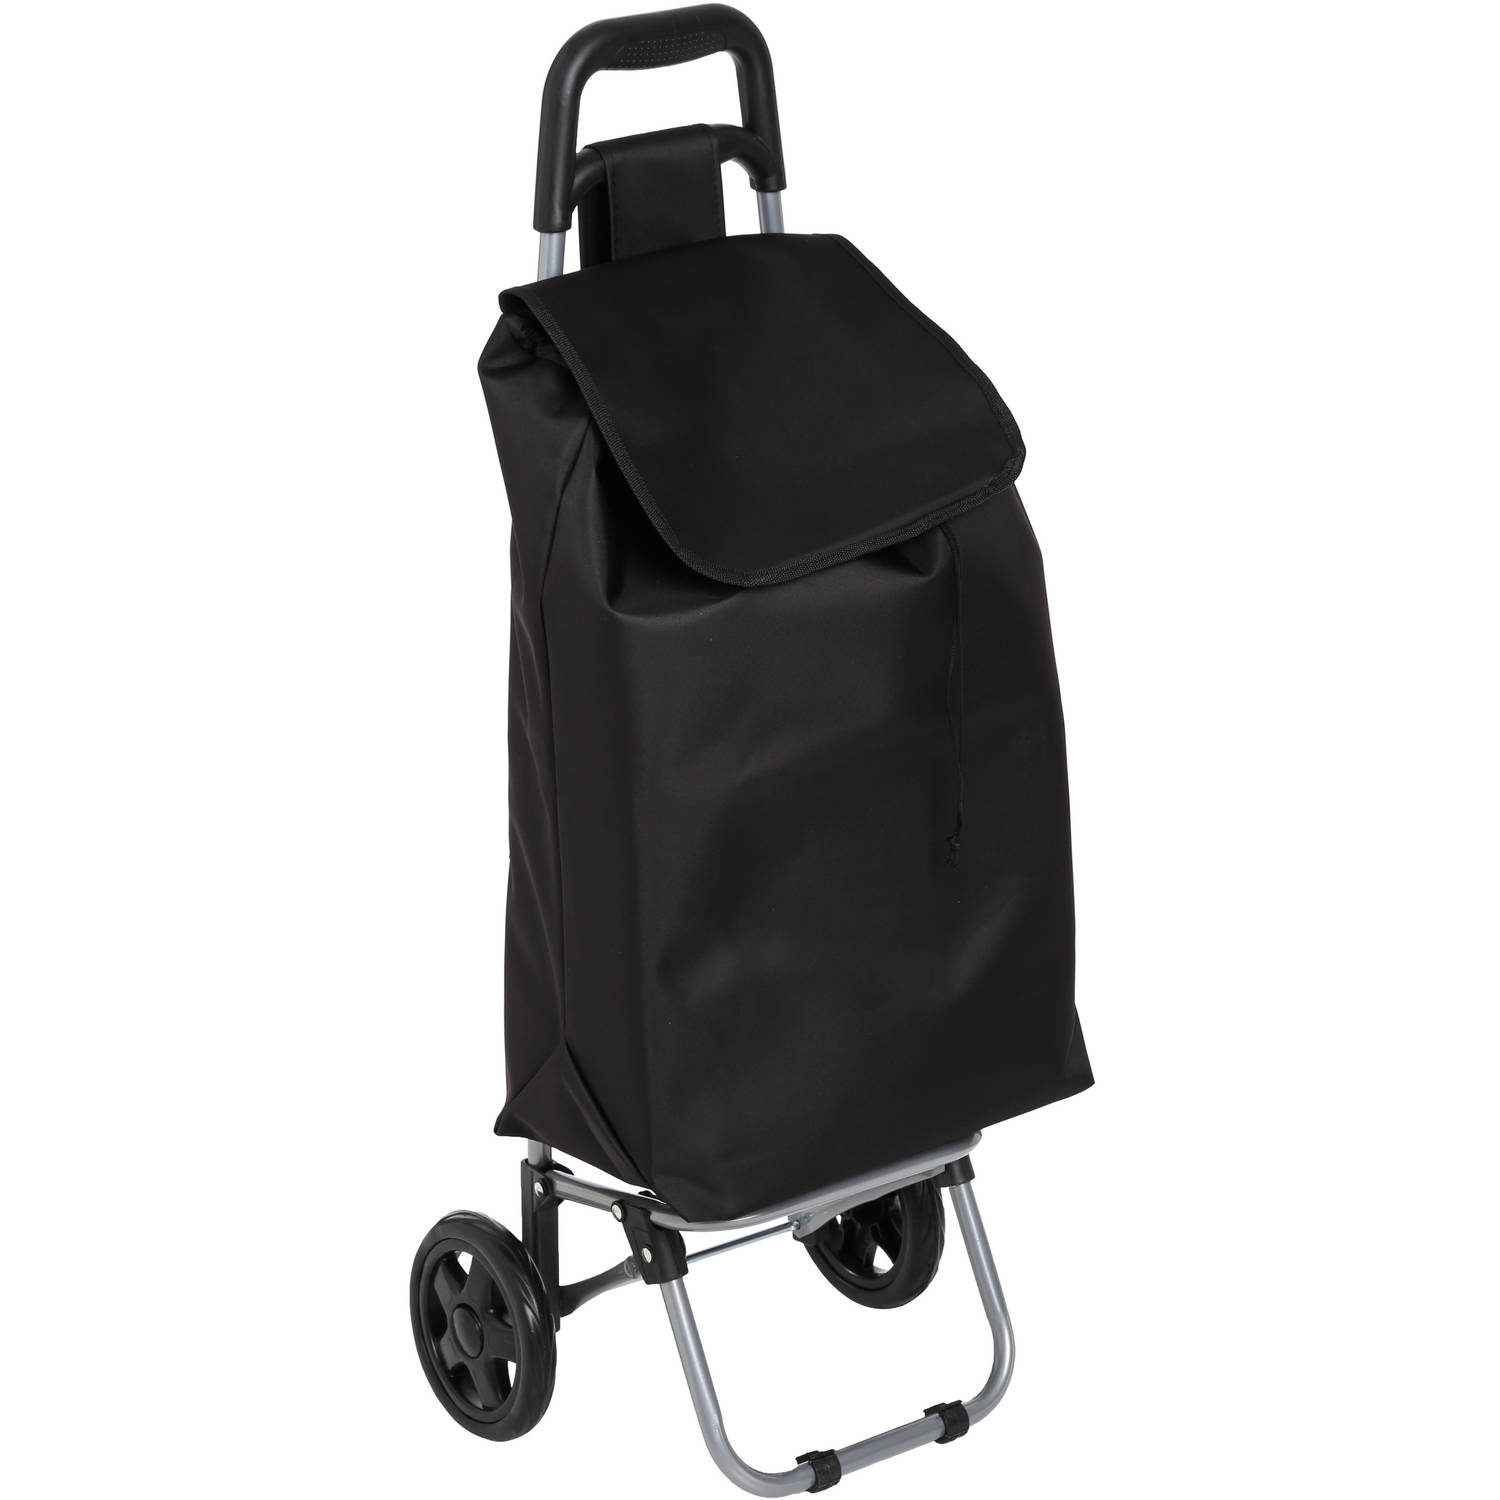 5Five Boodschappen trolley tas - inhoud 30 liter - zwart - met wielen - Boodschappentas - 35 x 28 x 92 cm